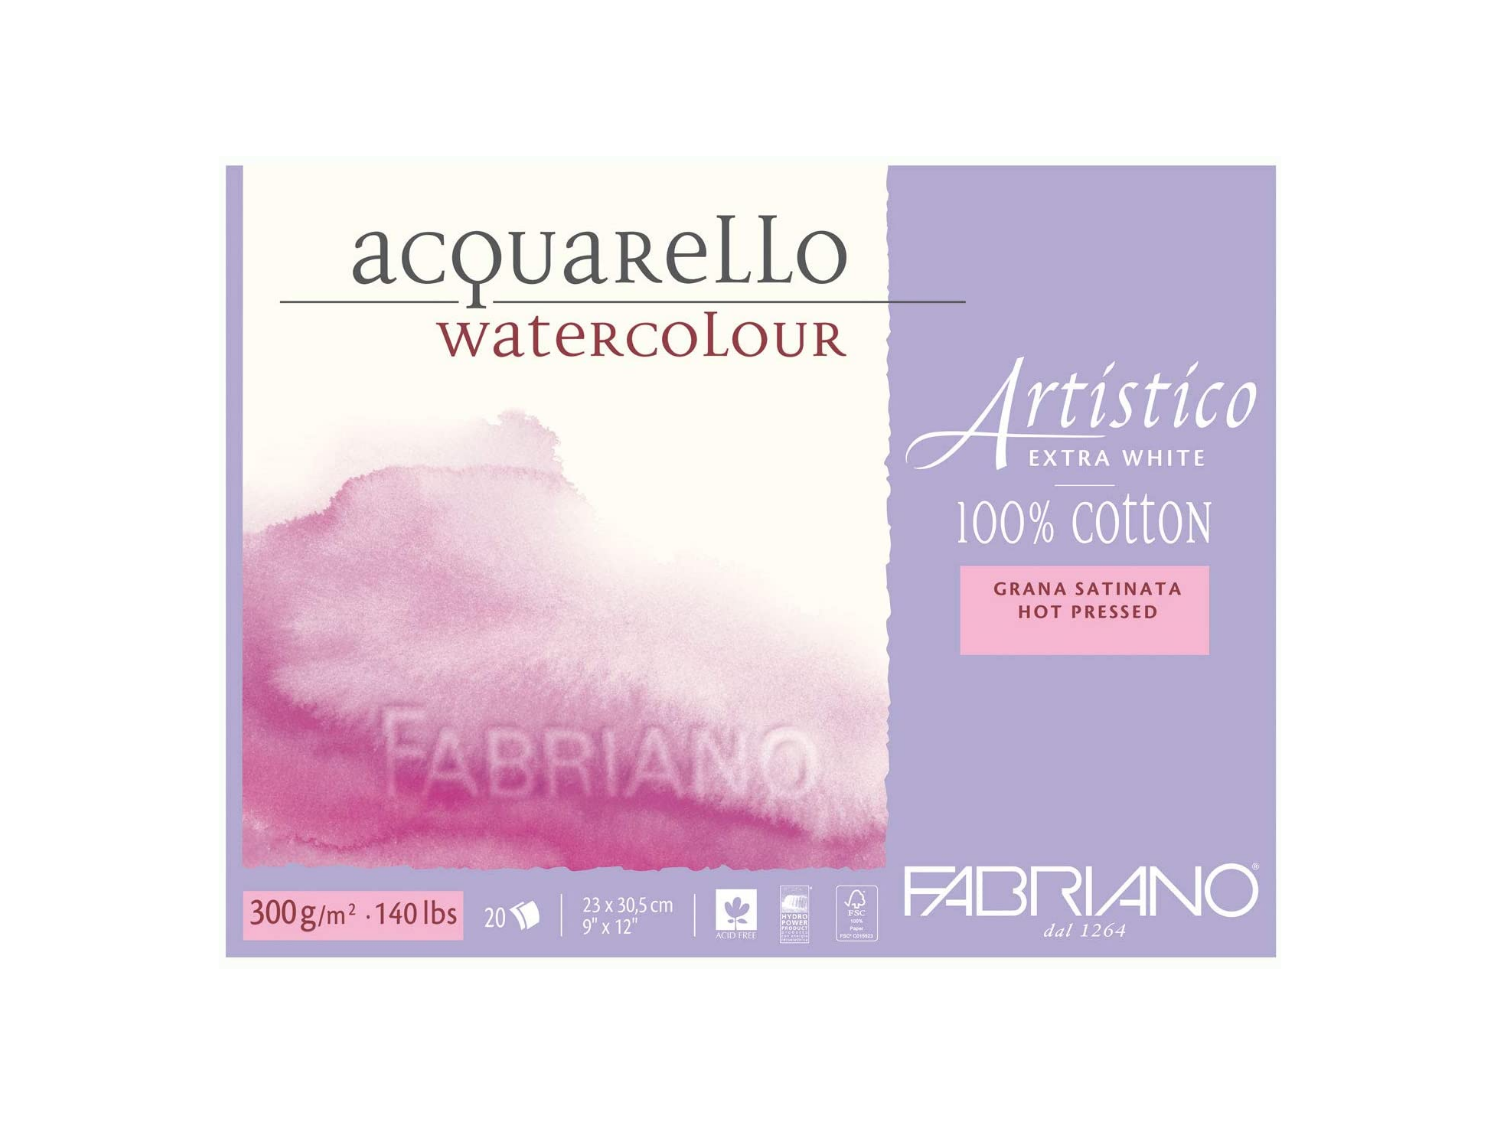 Carta Fabriano Artistico Traditional White in fogli 56x76 cm per